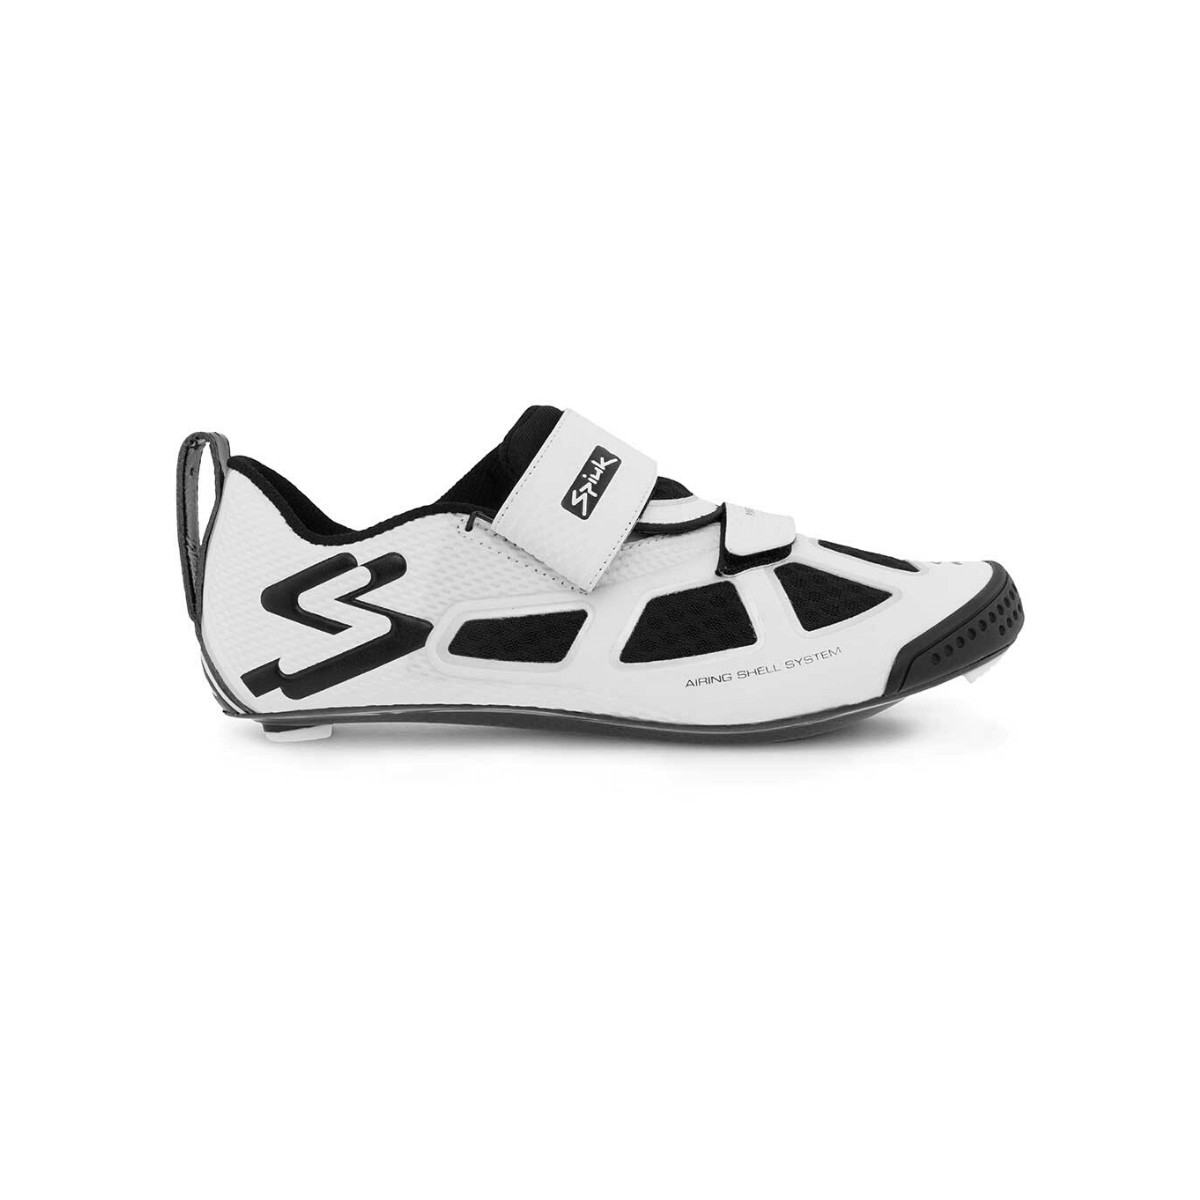 Spiuk Trivium C Sneakers White Black Unisex, Size 38 - EUR